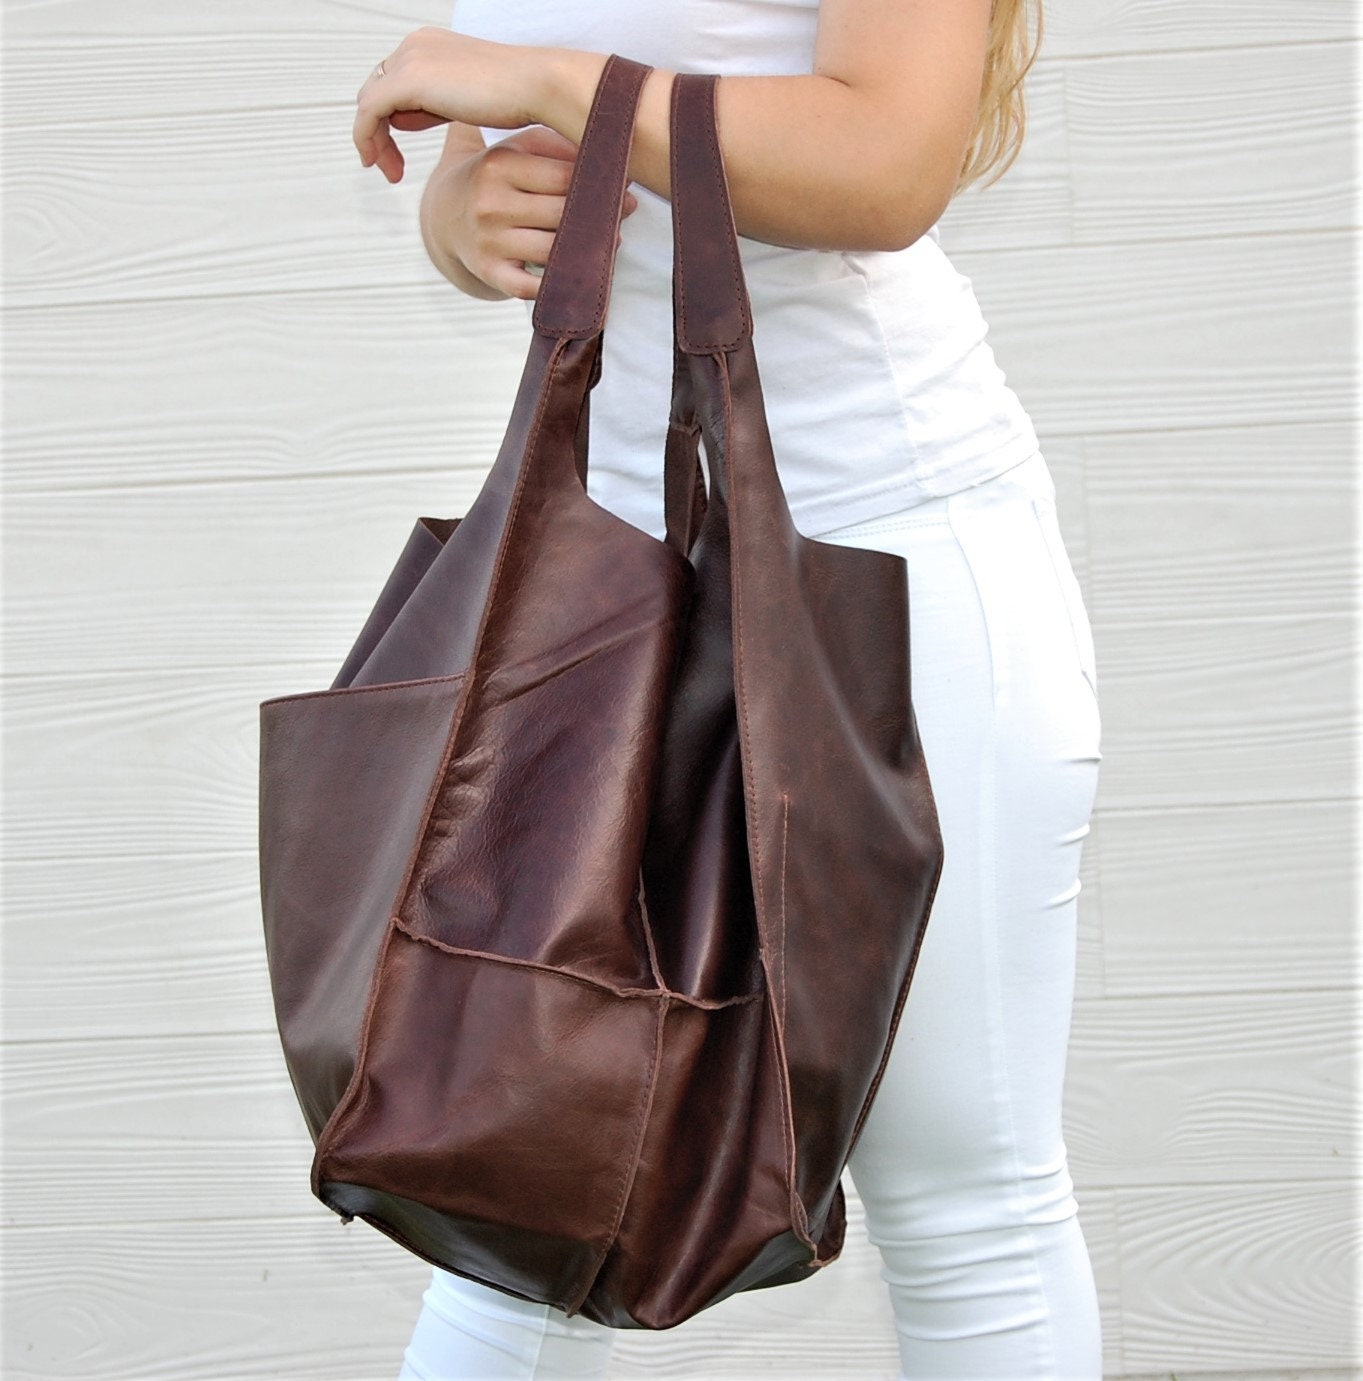 Tote Bag Oversize Cognac Brown Leather Bag Shopper Bag | Etsy